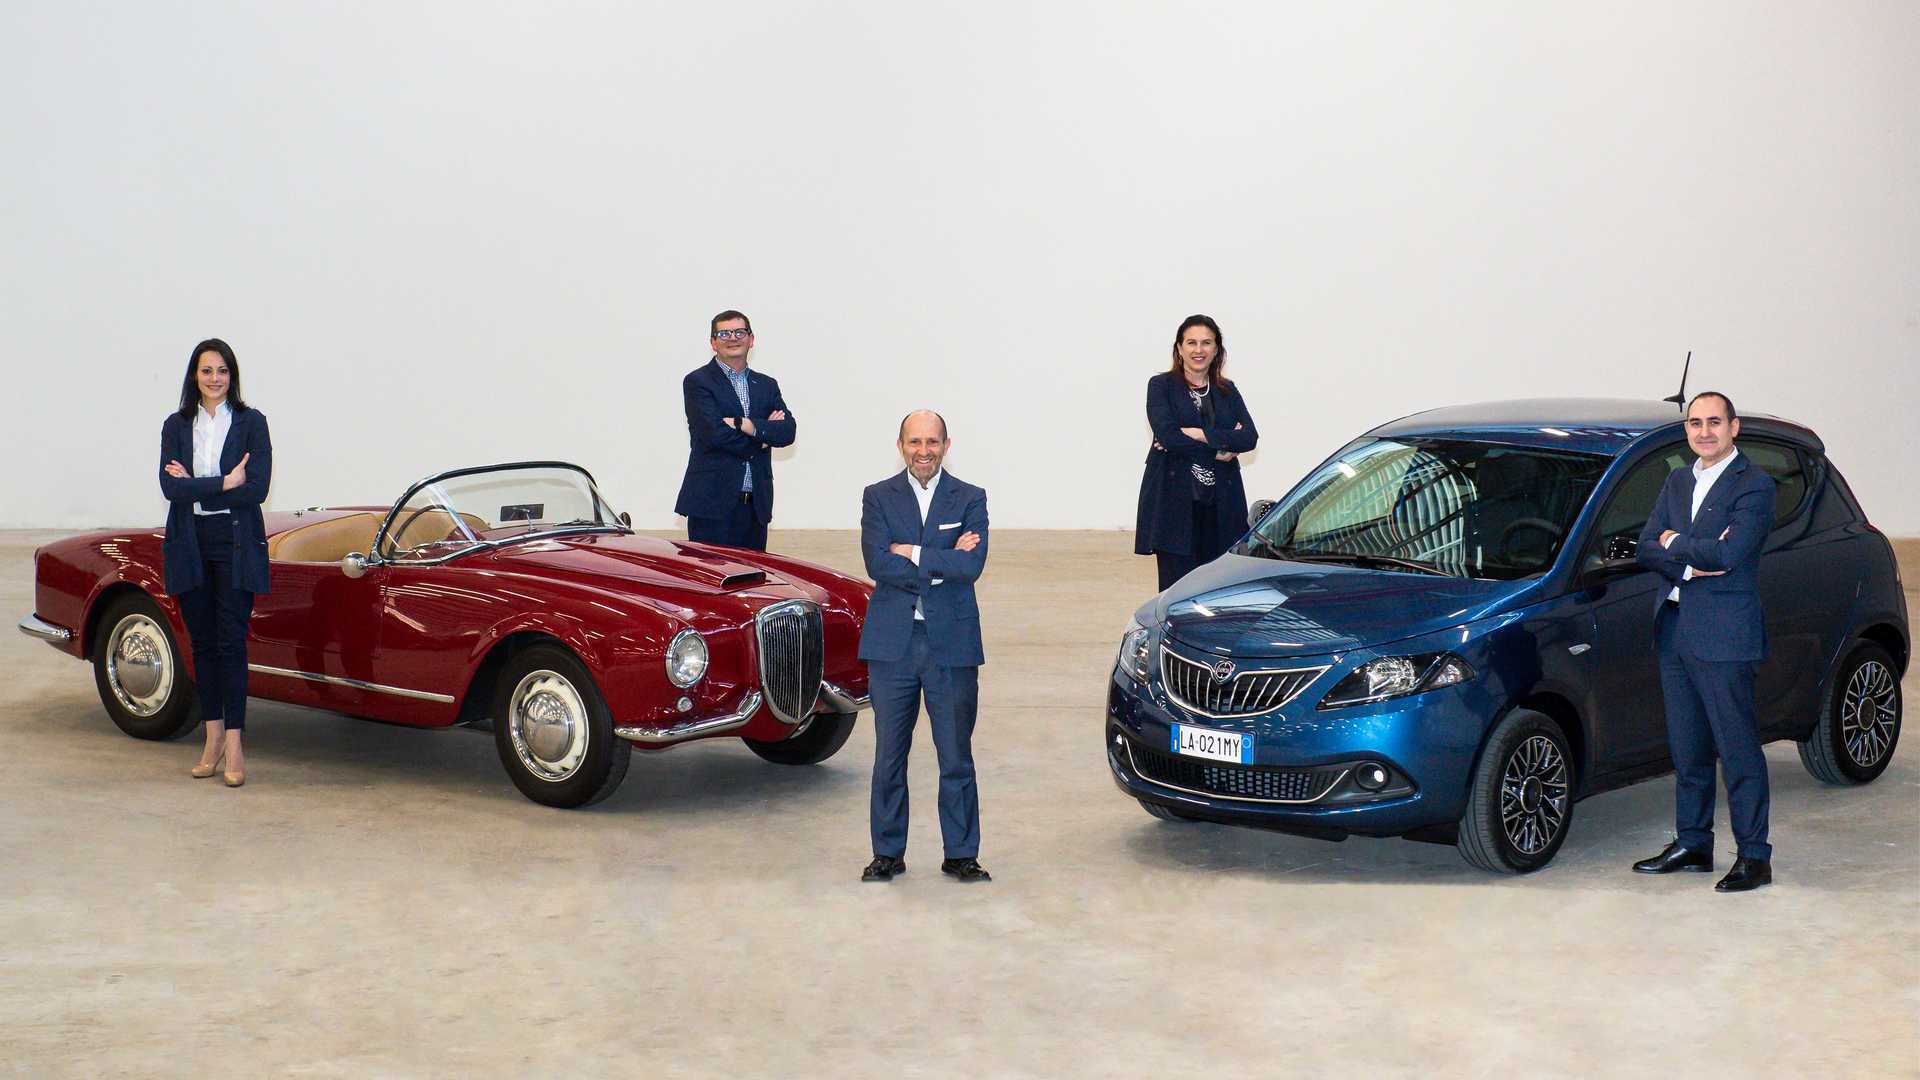 Протягом 10 років у компанії Lancia мають намір сконцентрувати свої зусилля у галузі електрифікації